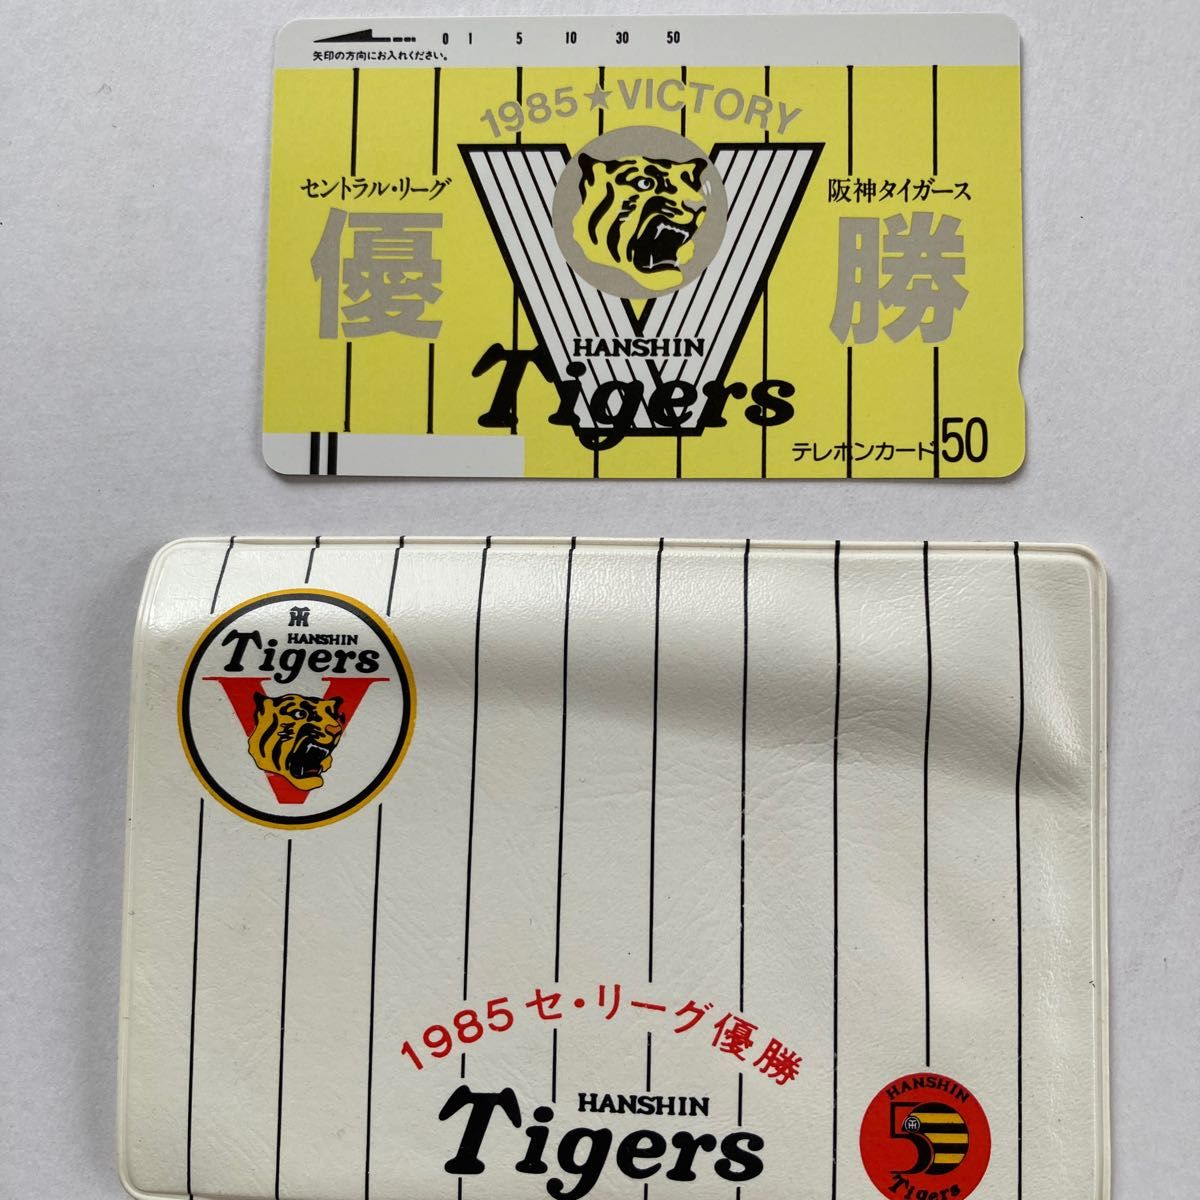 阪神タイガース1985年優勝記念テレフォンカード2点